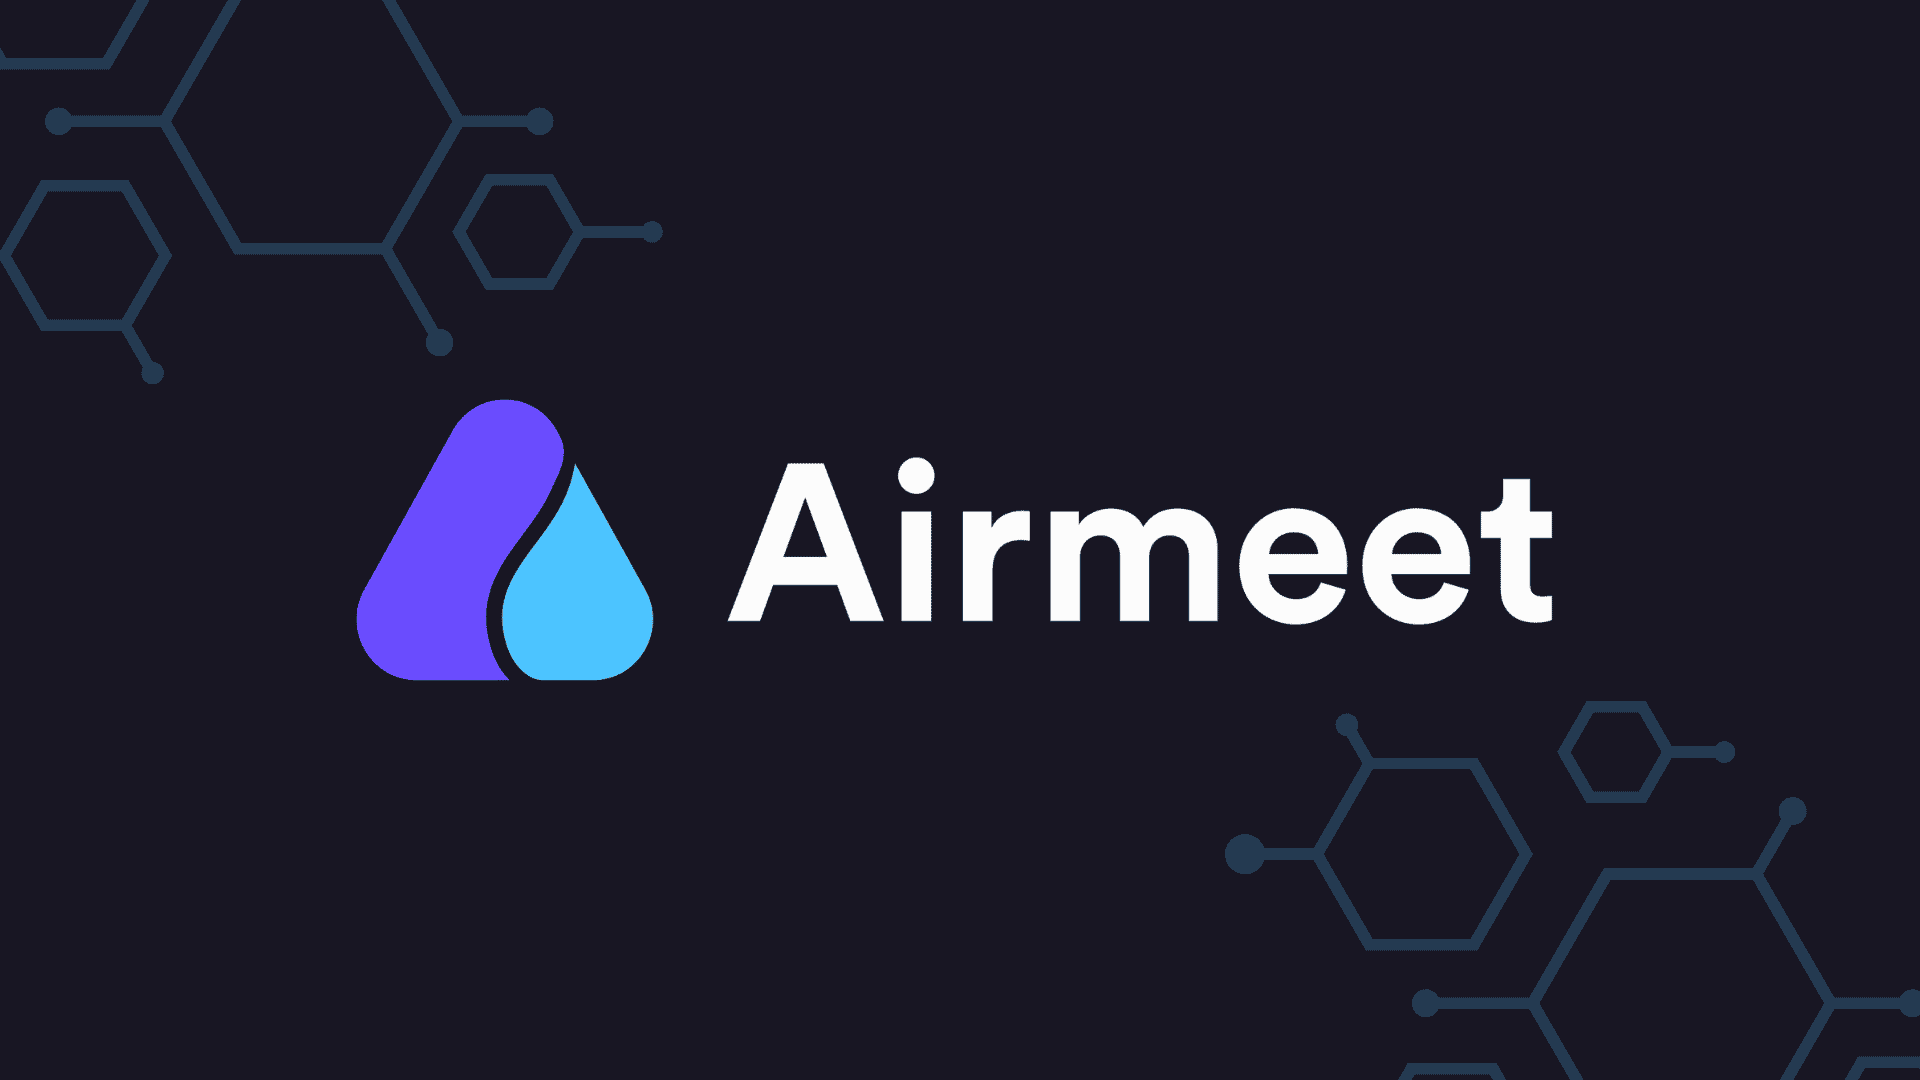 Airmeet Logo